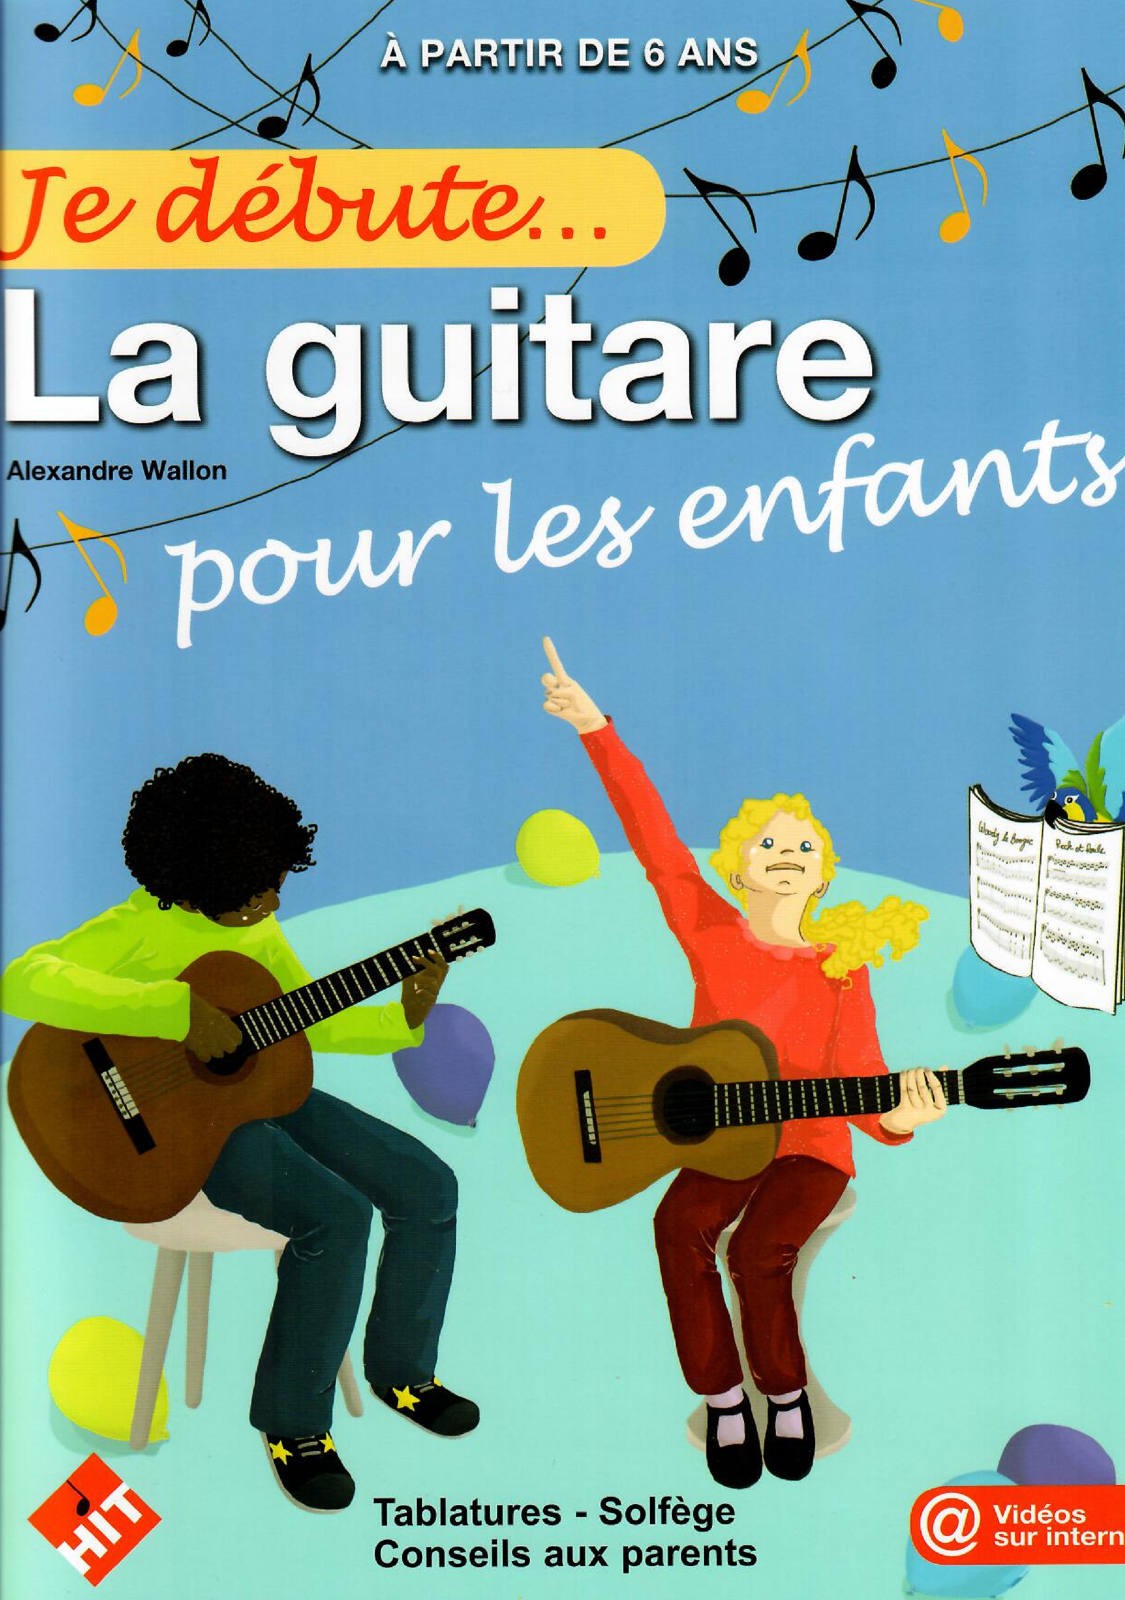 Une méthode de guitare dynamique et sérieuse pour les enfants.